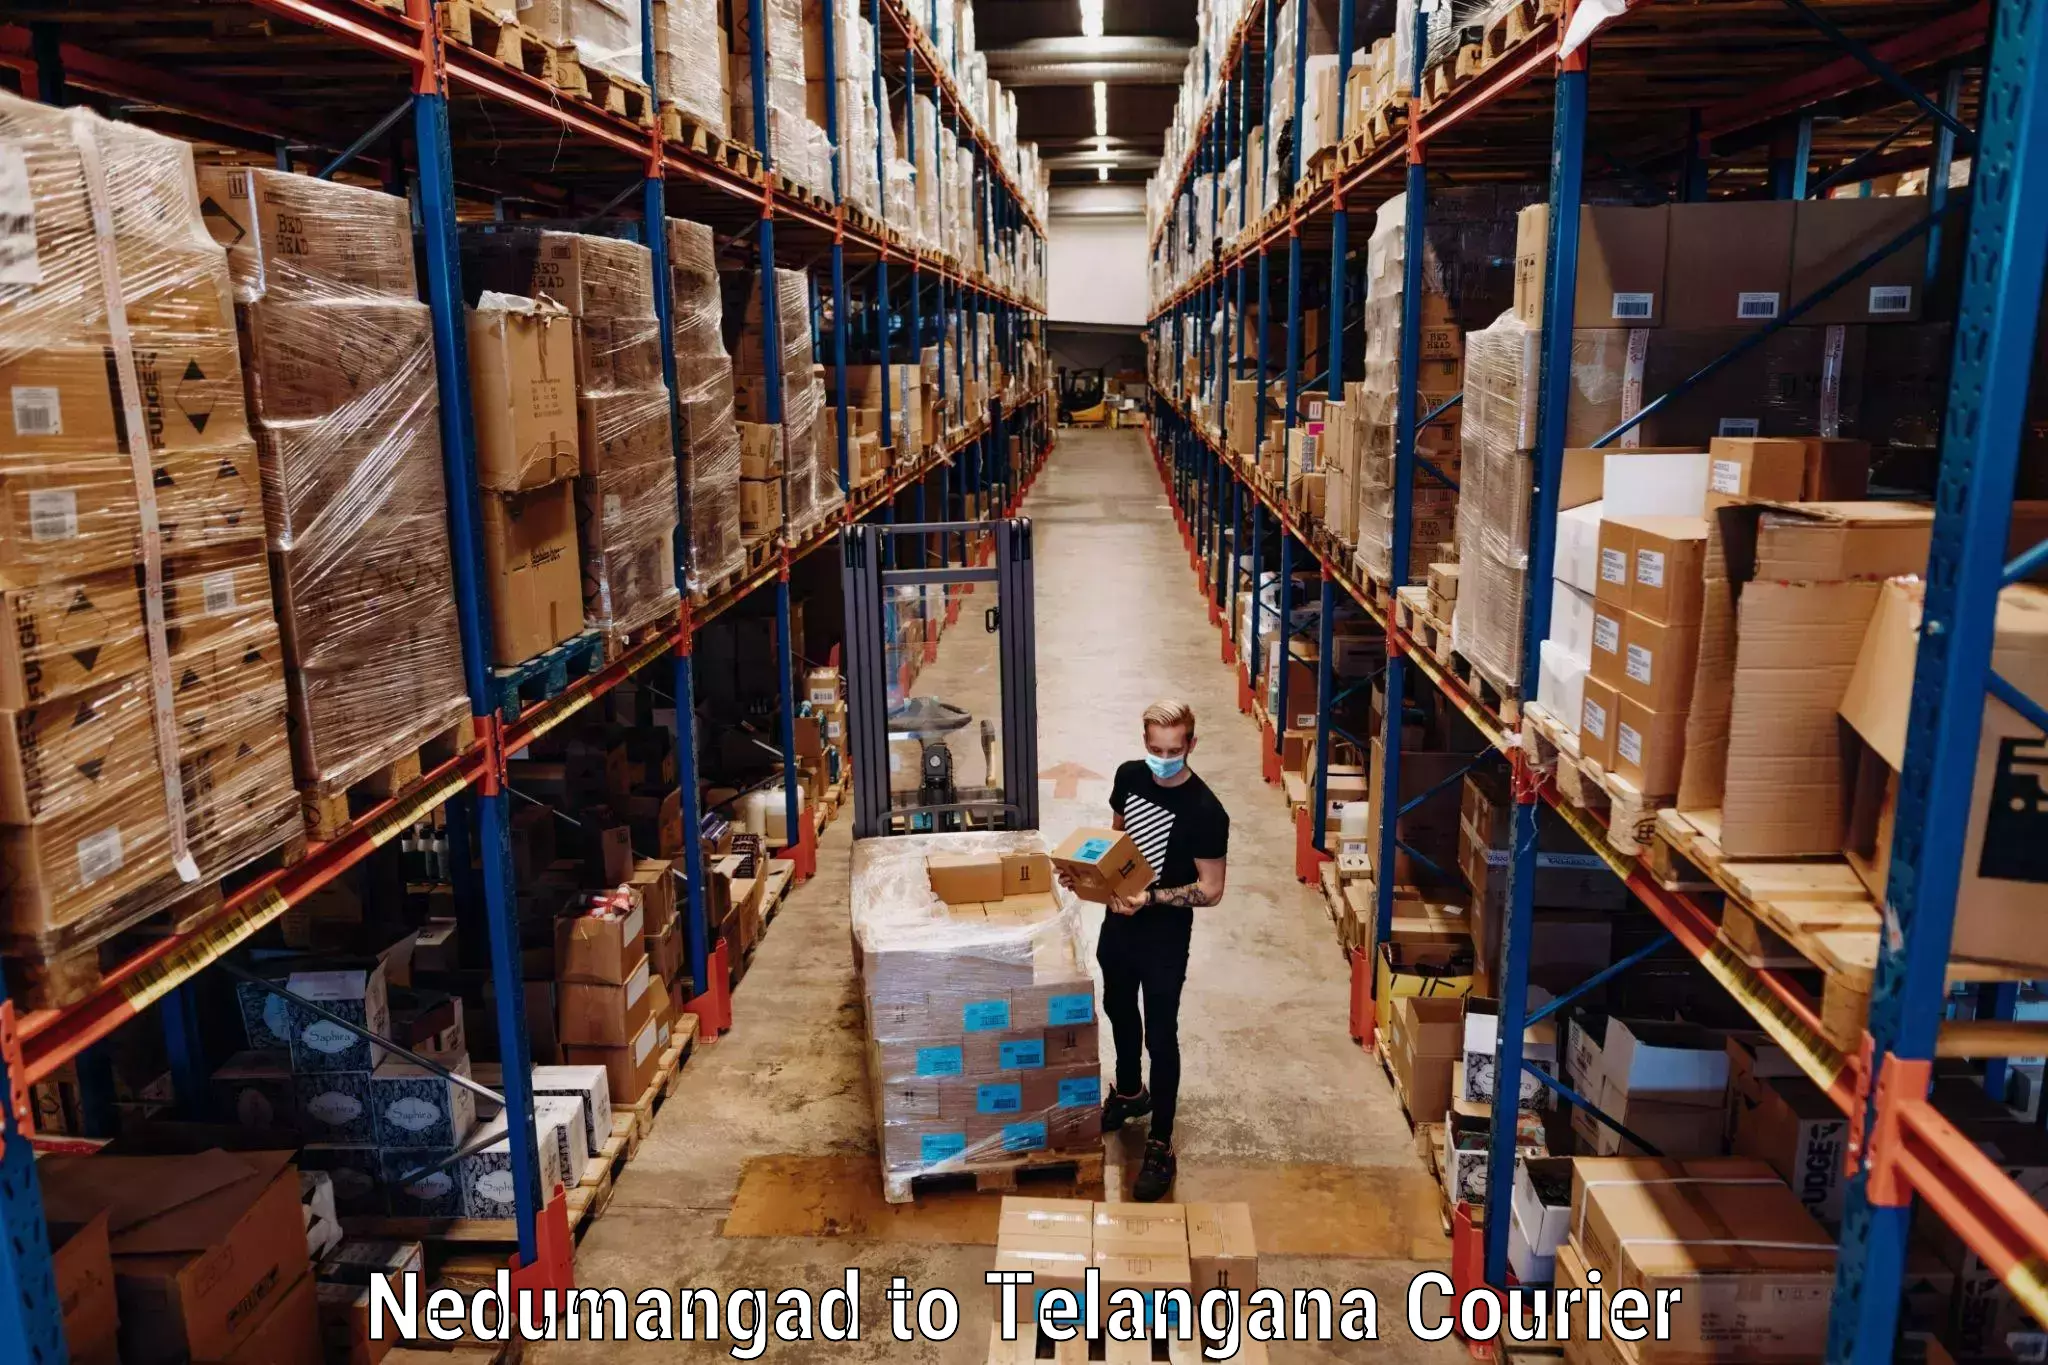 Luggage shipping guide Nedumangad to Adilabad